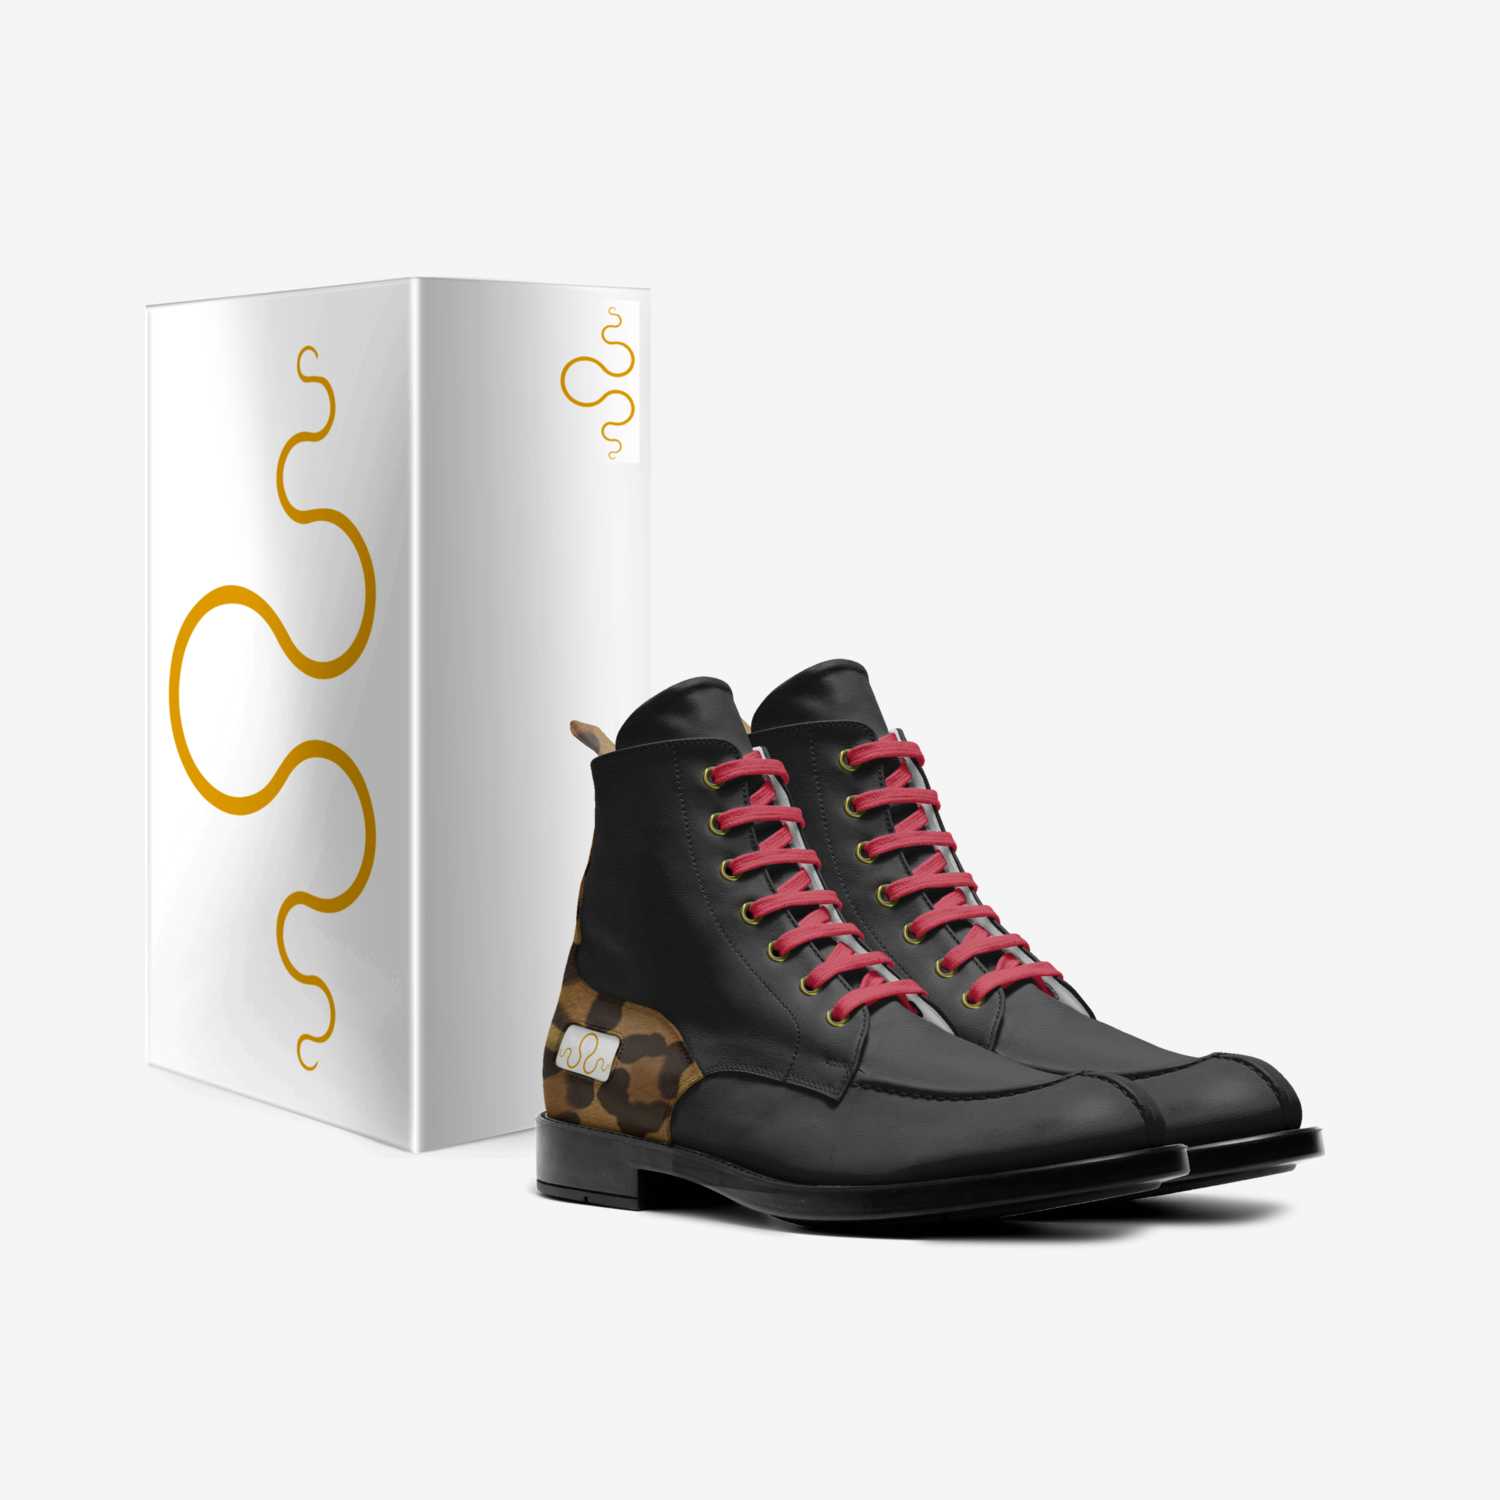 Kraken8 custom made in Italy shoes by Carlos Segarra | Box view